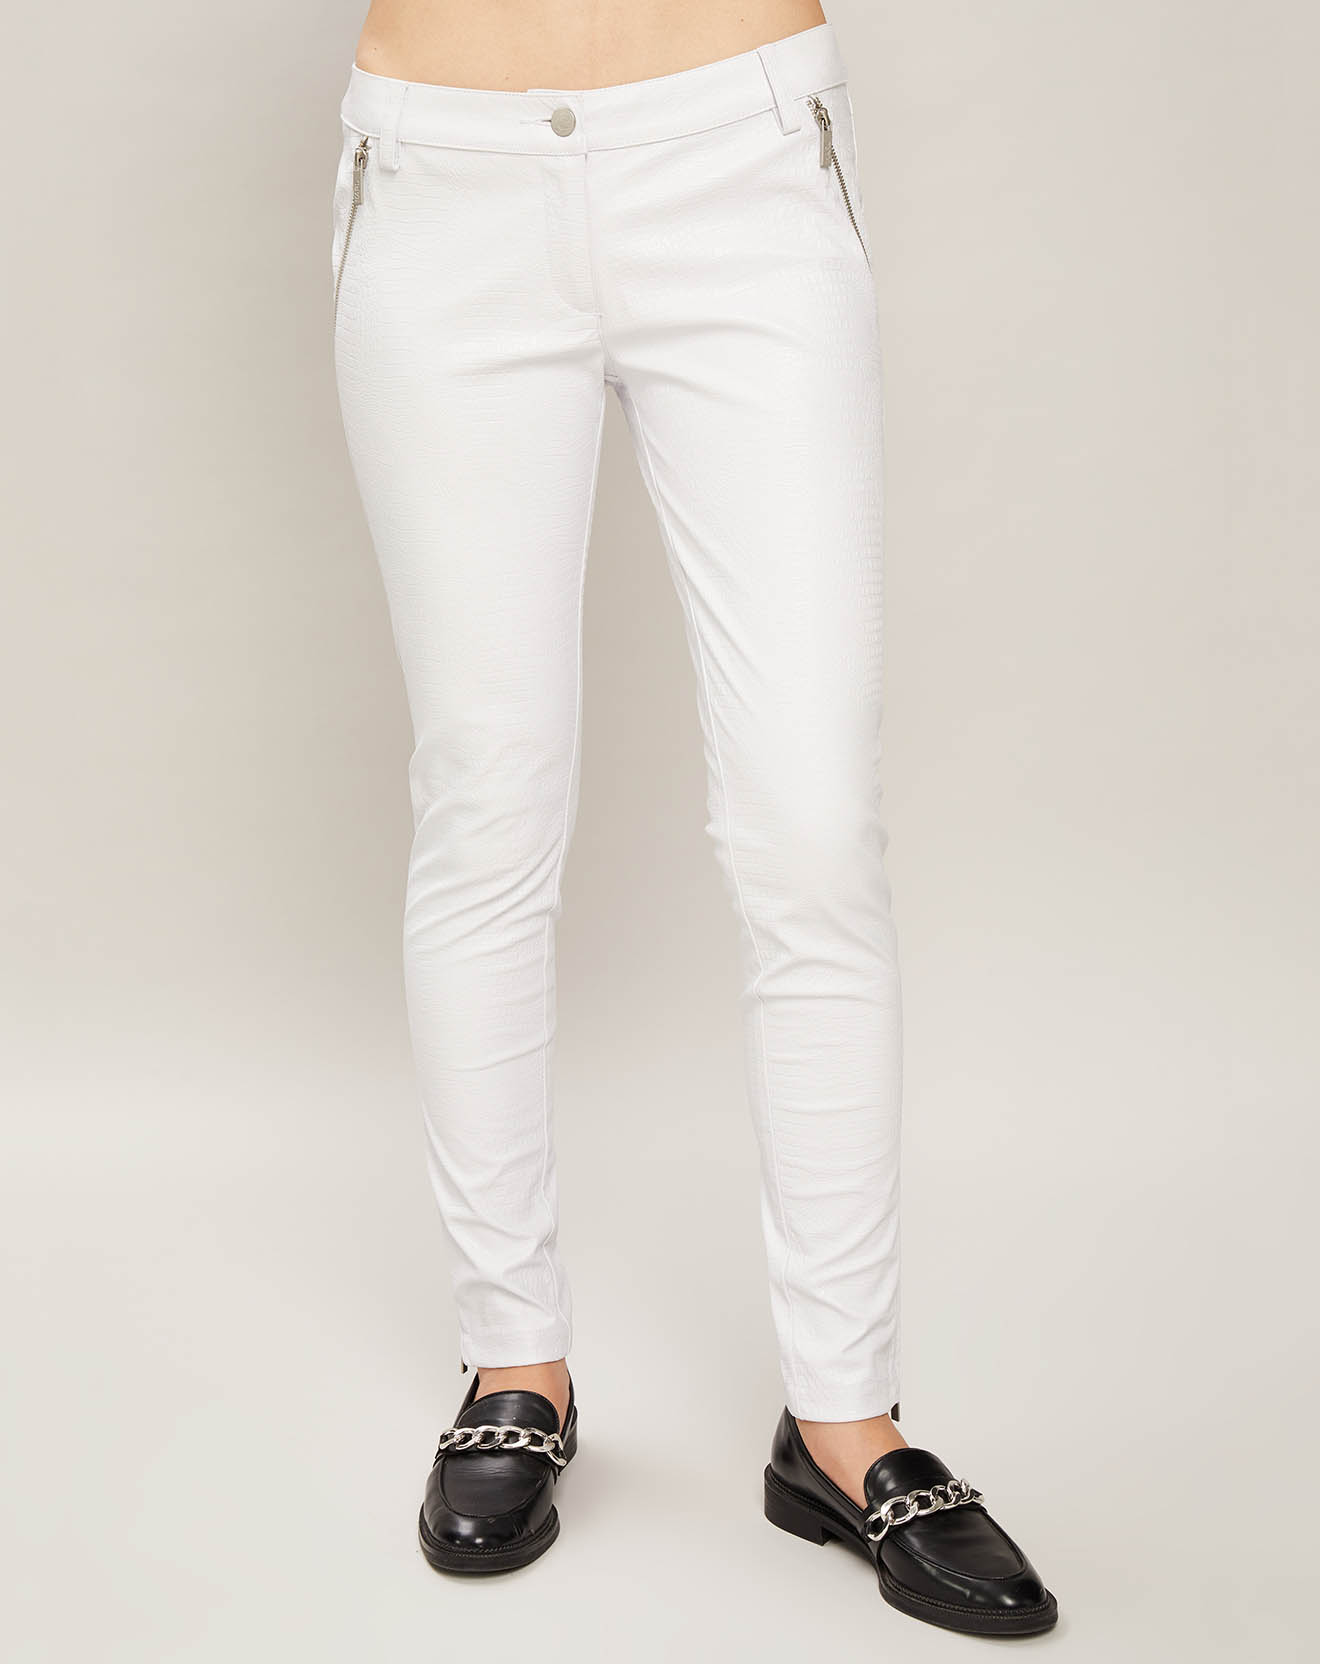 Pantalon texturé blanc